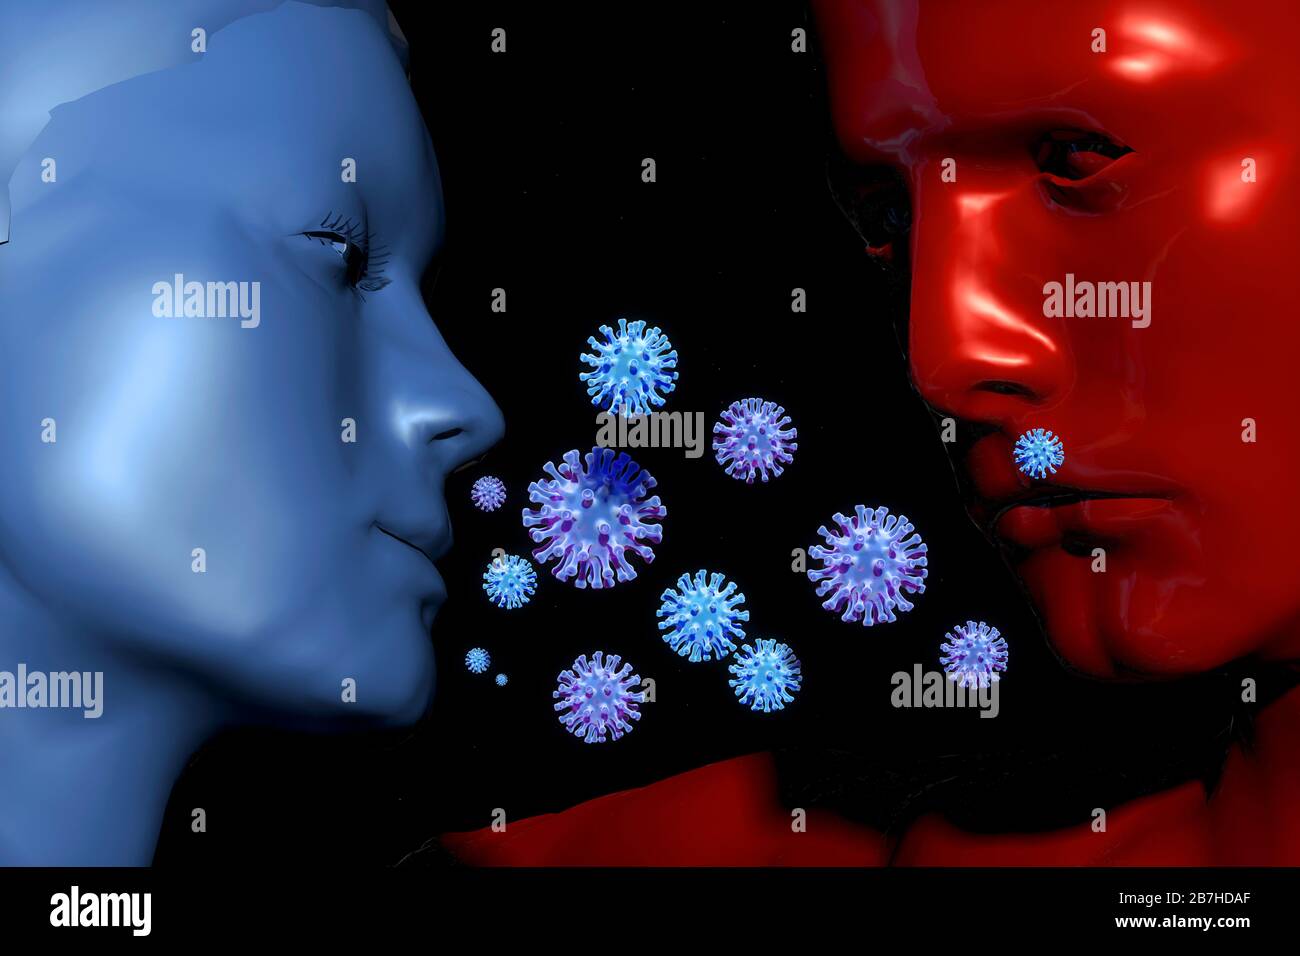 ein fieses Virus befaellt die Welt - Symbolbild: CGI-Visualisierung: Coronavirus Covid 19, SARS 2,Menschen: Mann, FRau, Liebe in Zeiten der Seuche/ a Stock Photo